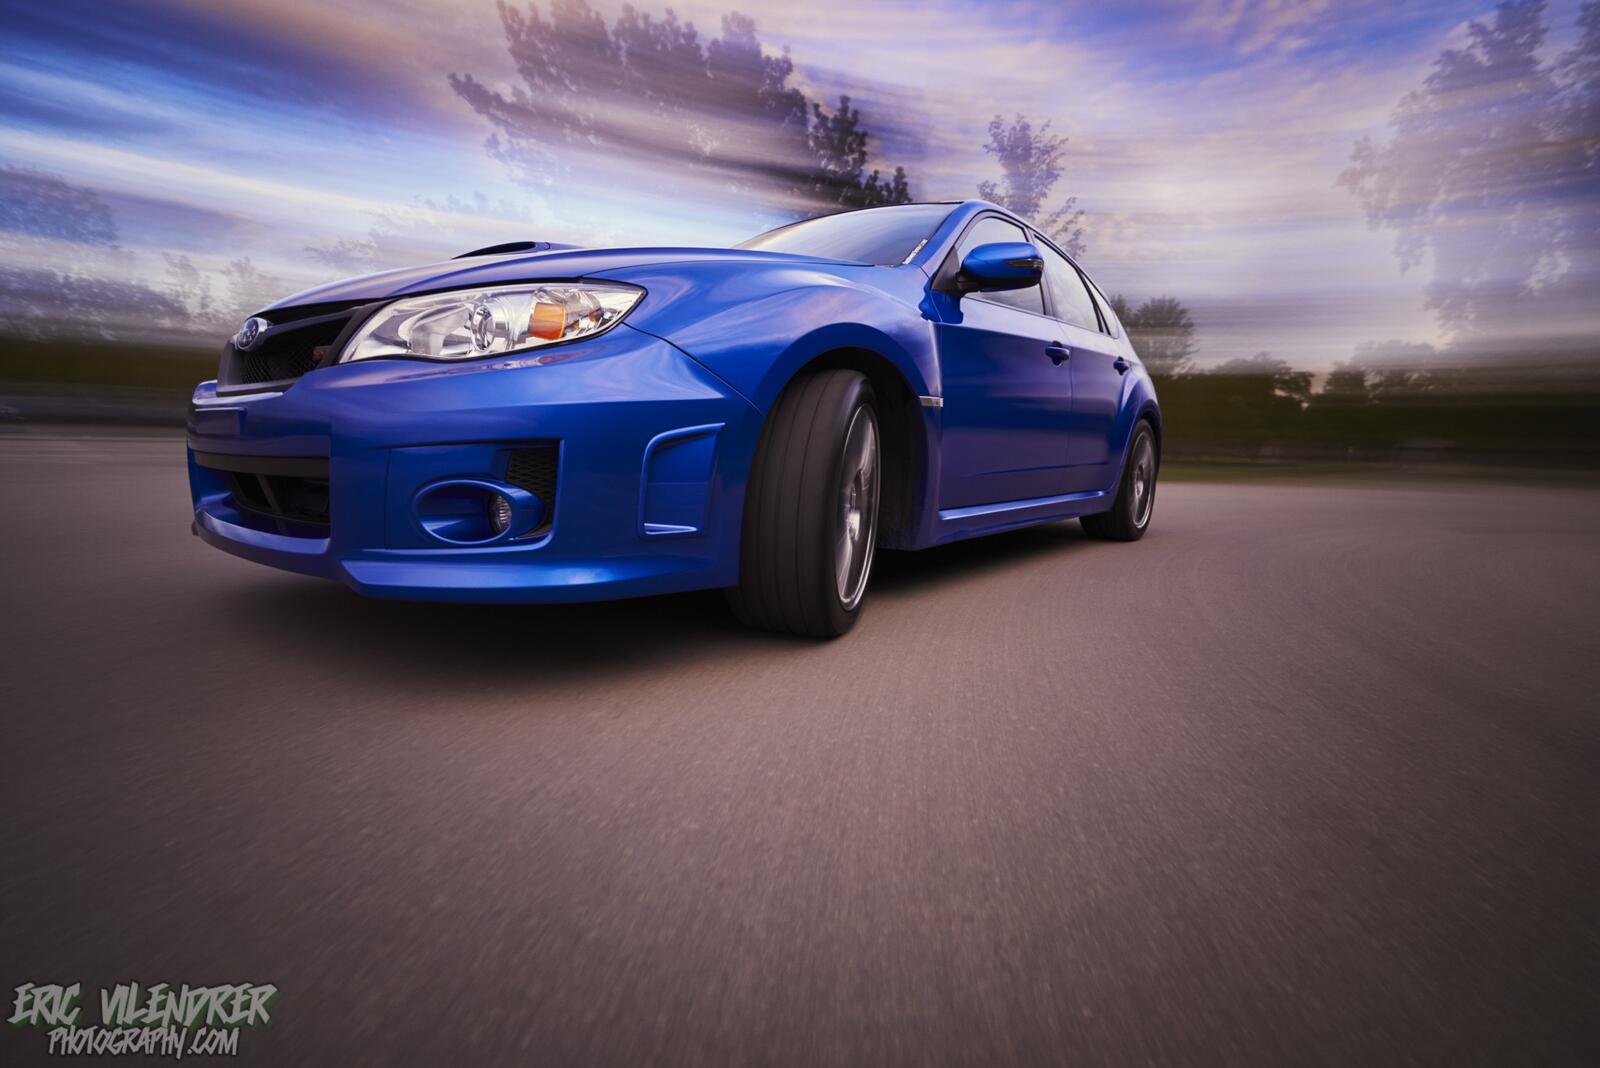 Бесплатное фото Subaru Impreza синего цвета